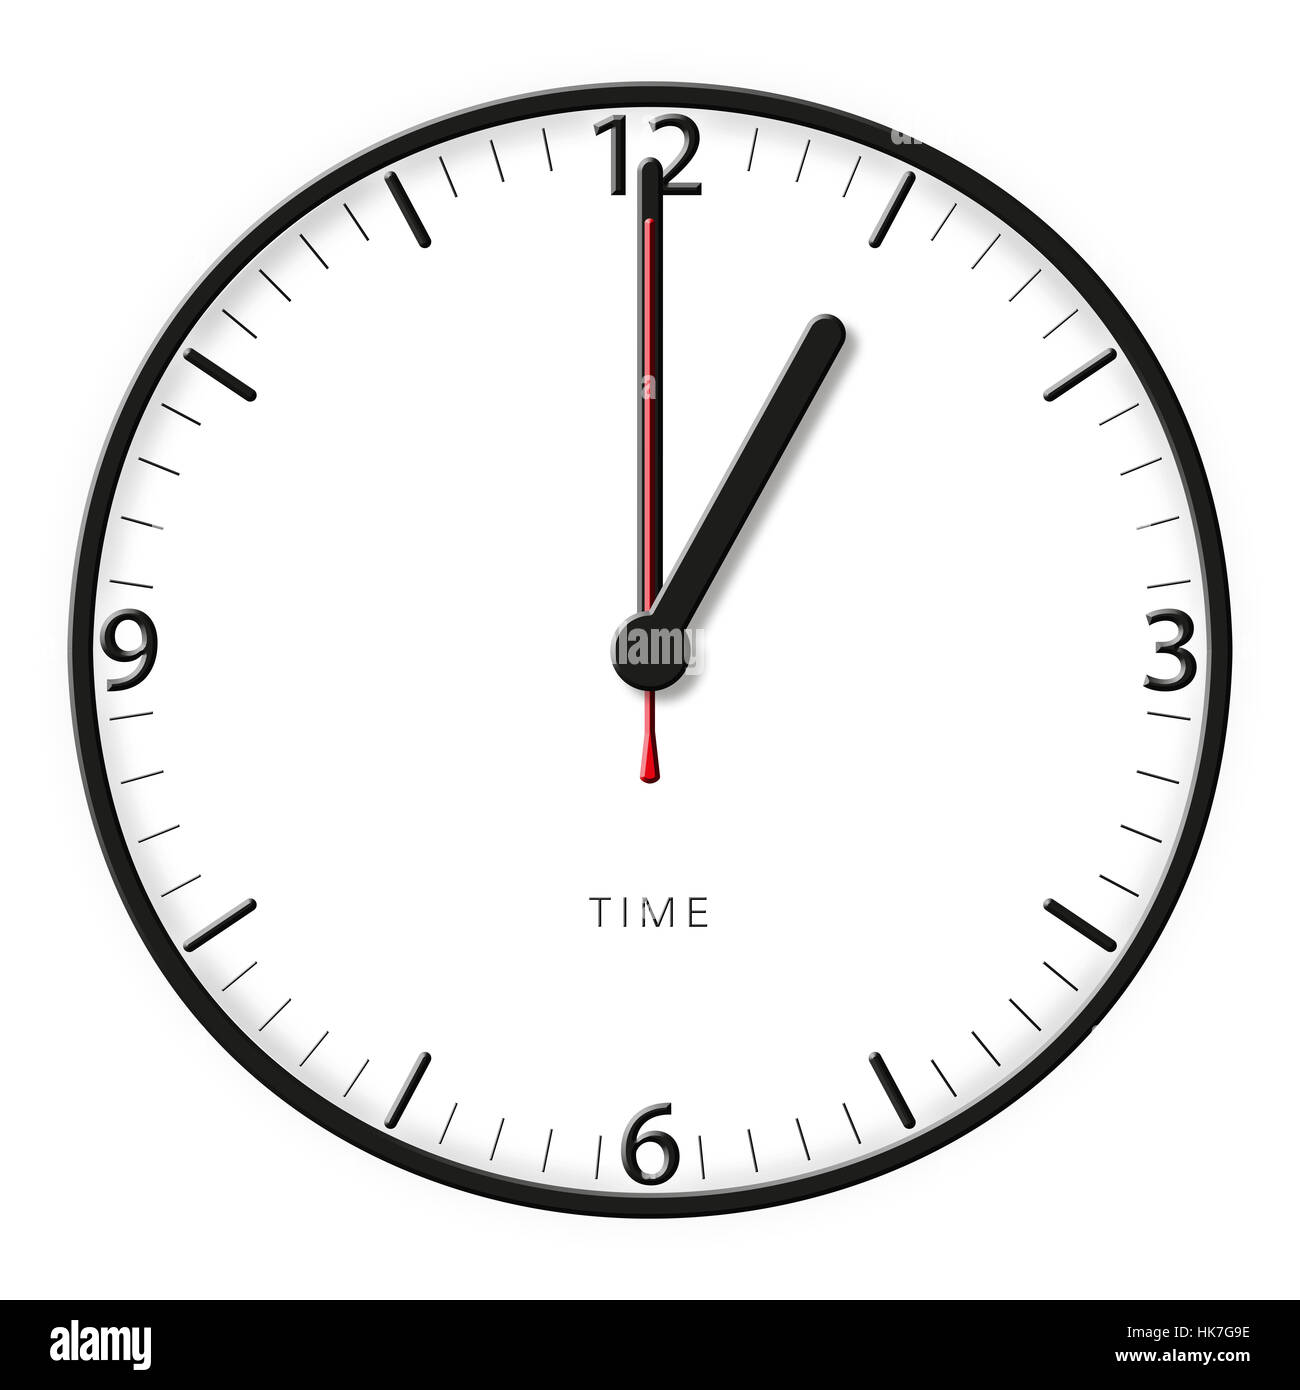 Uhr, Zeit, pünktlich, Uhr, Zeiger, Zeit, Sekunden, Minuten, Stunden, Äpfel  Stockfotografie - Alamy